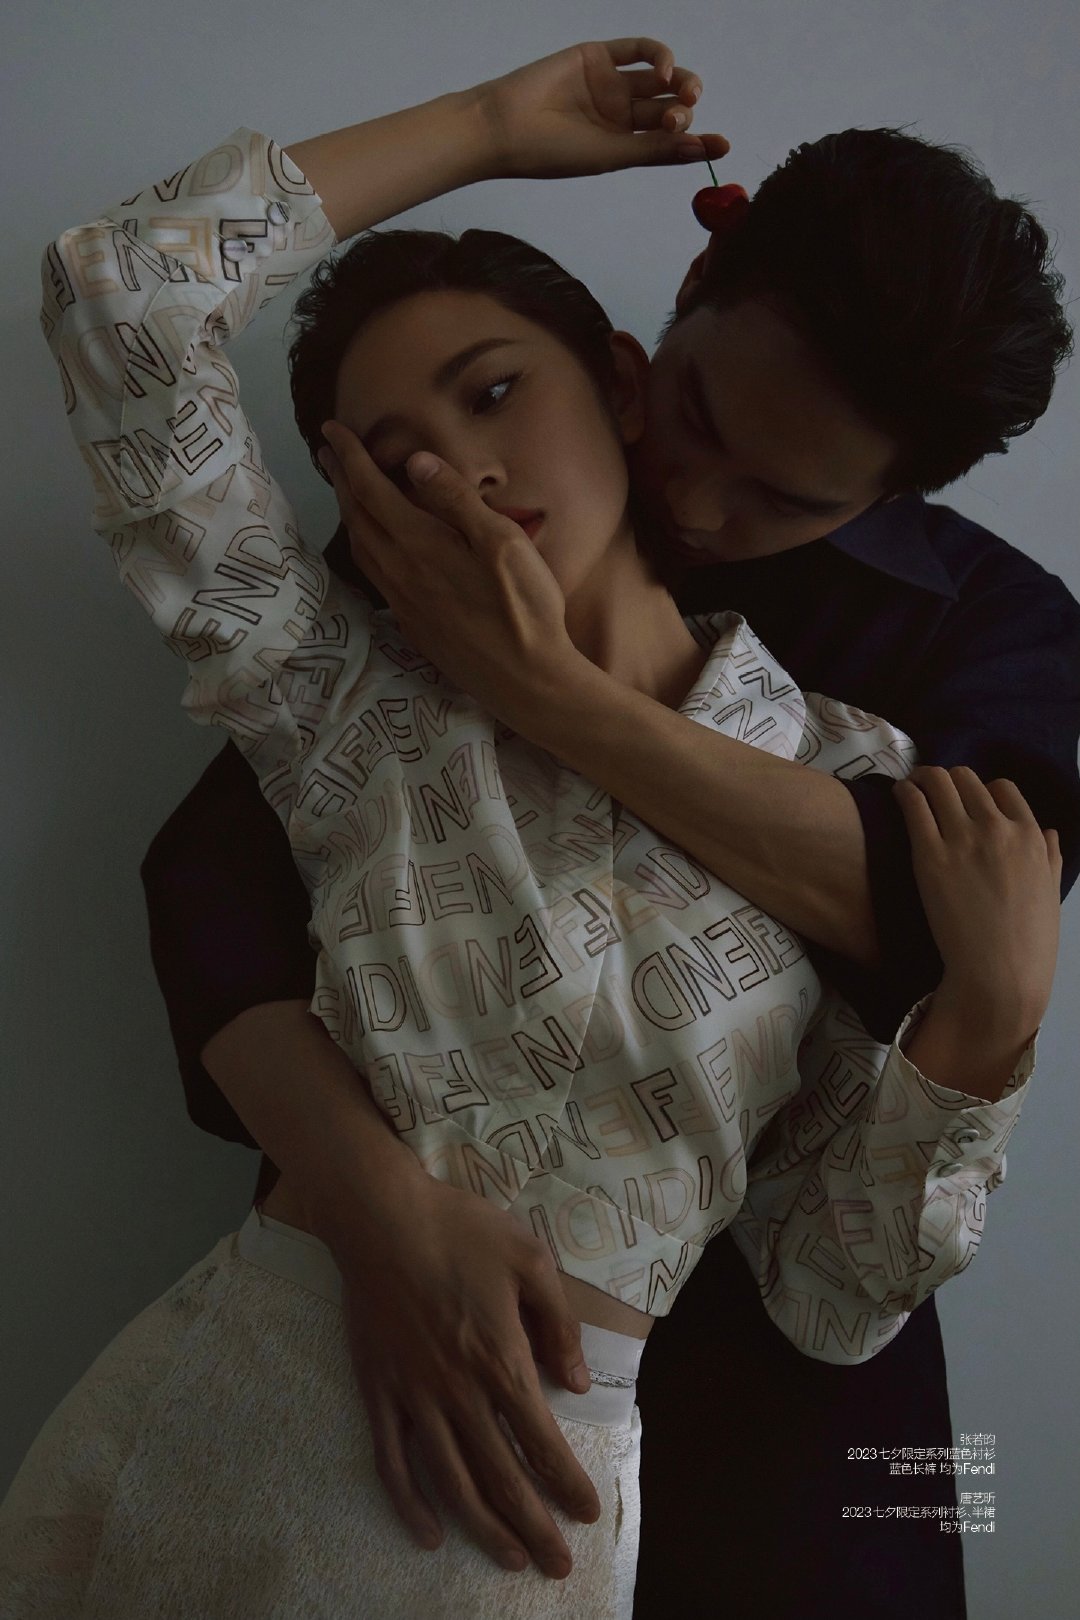 张若昀唐艺昕合体拍摄杂志,两人亲吻,拥抱,化学反应爆棚,真夫妻就是好